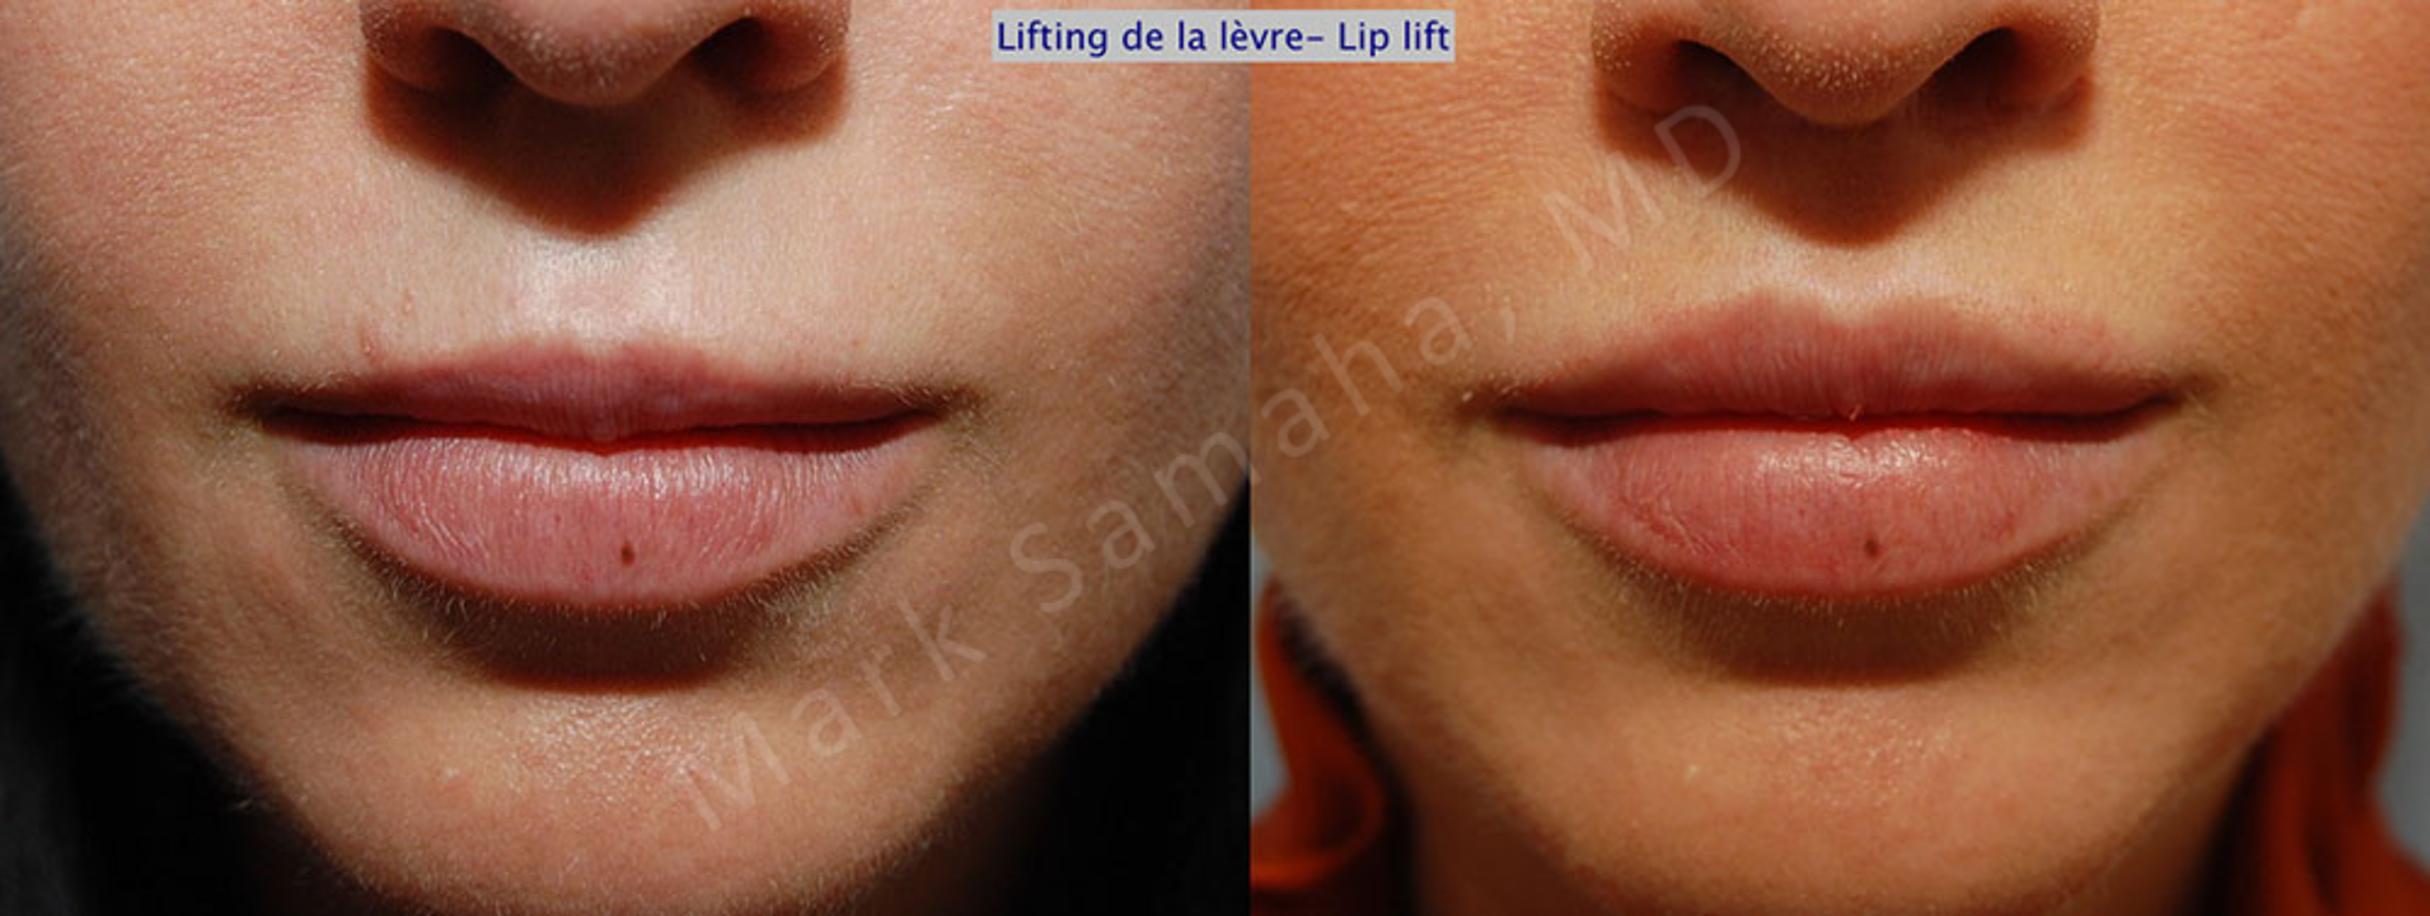 Before & After Lip Lift / Lifting de la lèvre supérieure Case 27 View #1 View in Mount Royal, QC